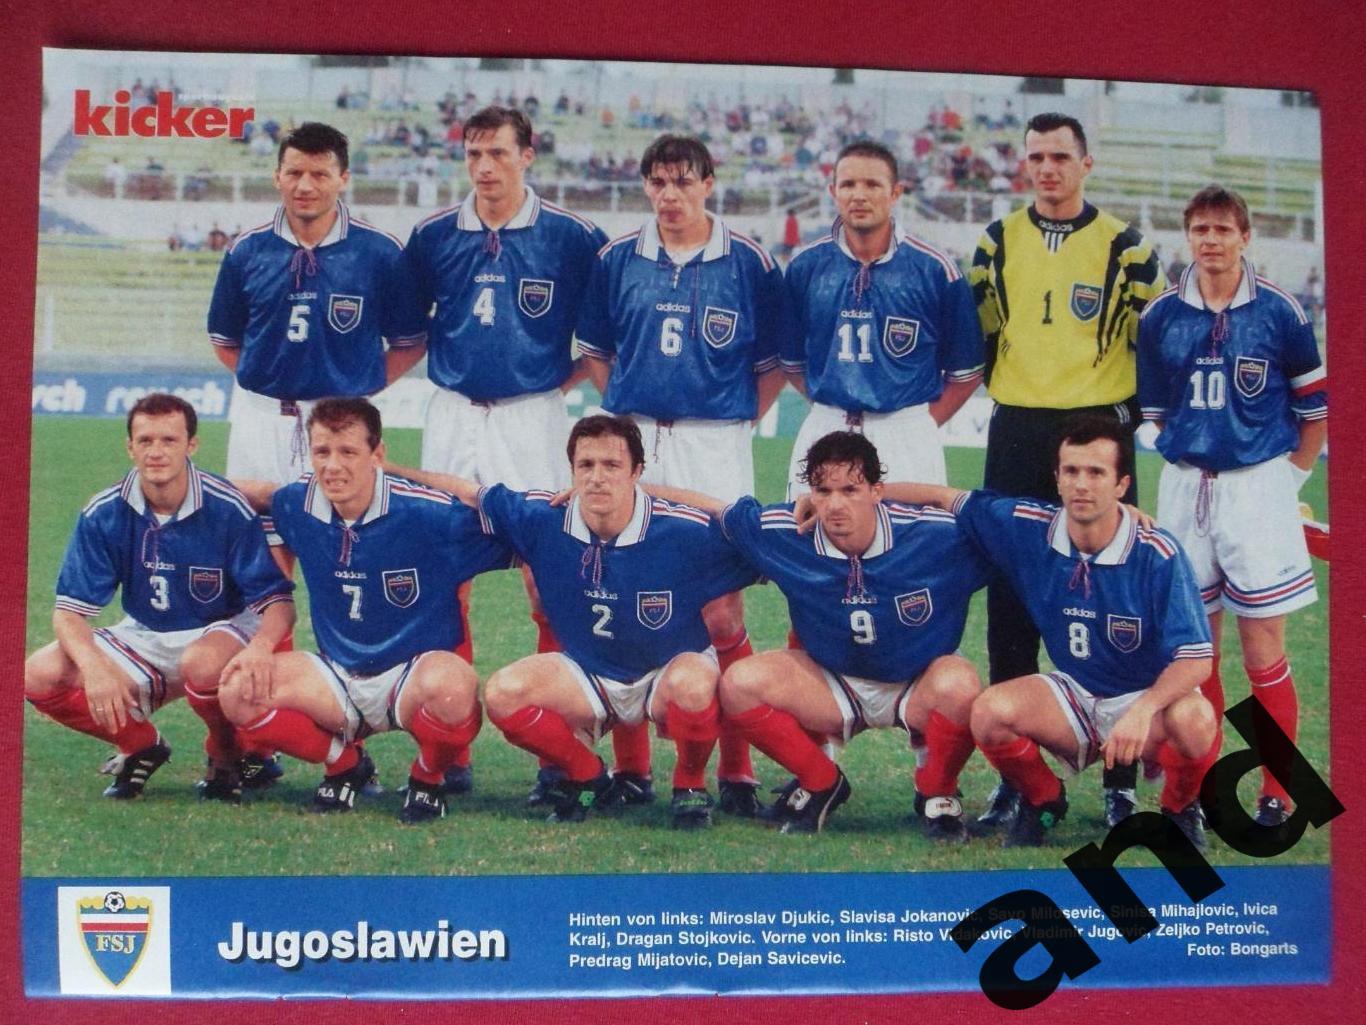 kicker постер Югославия 1998